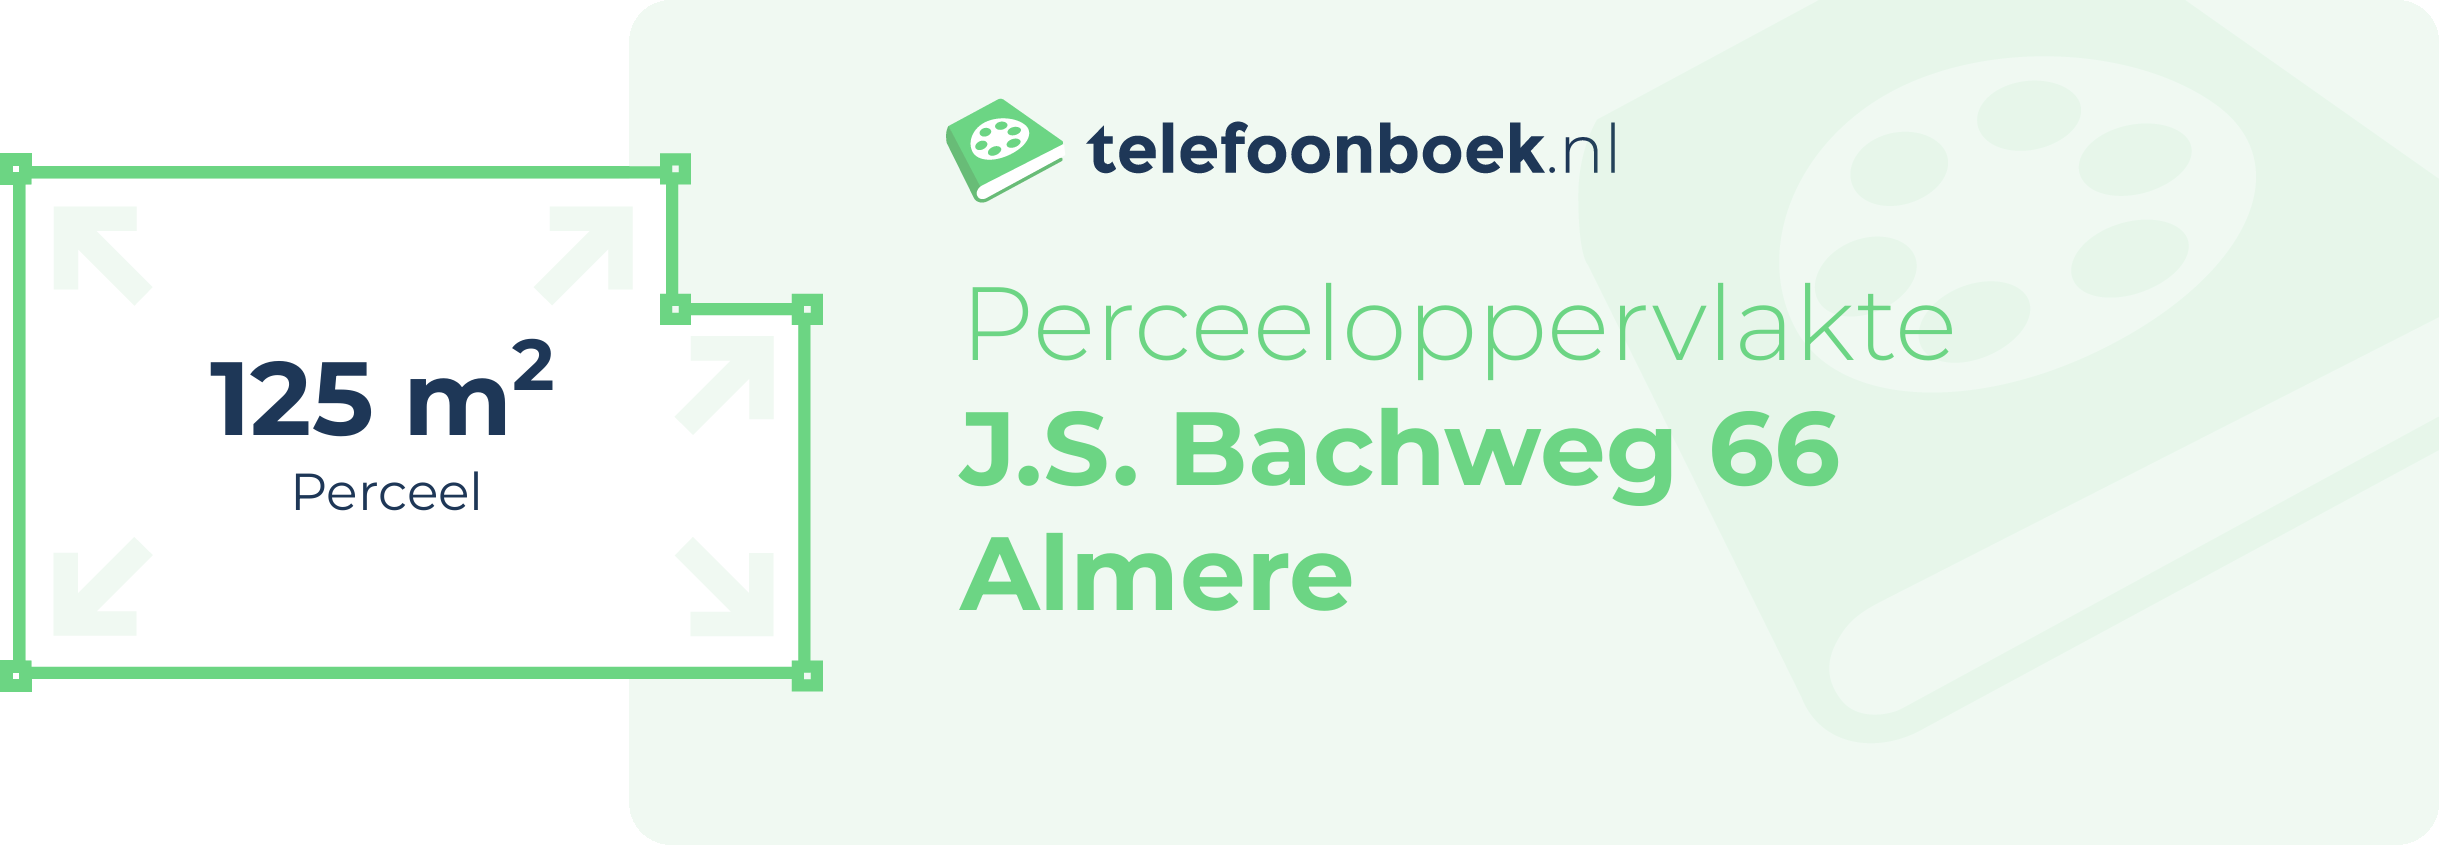 Perceeloppervlakte J.S. Bachweg 66 Almere